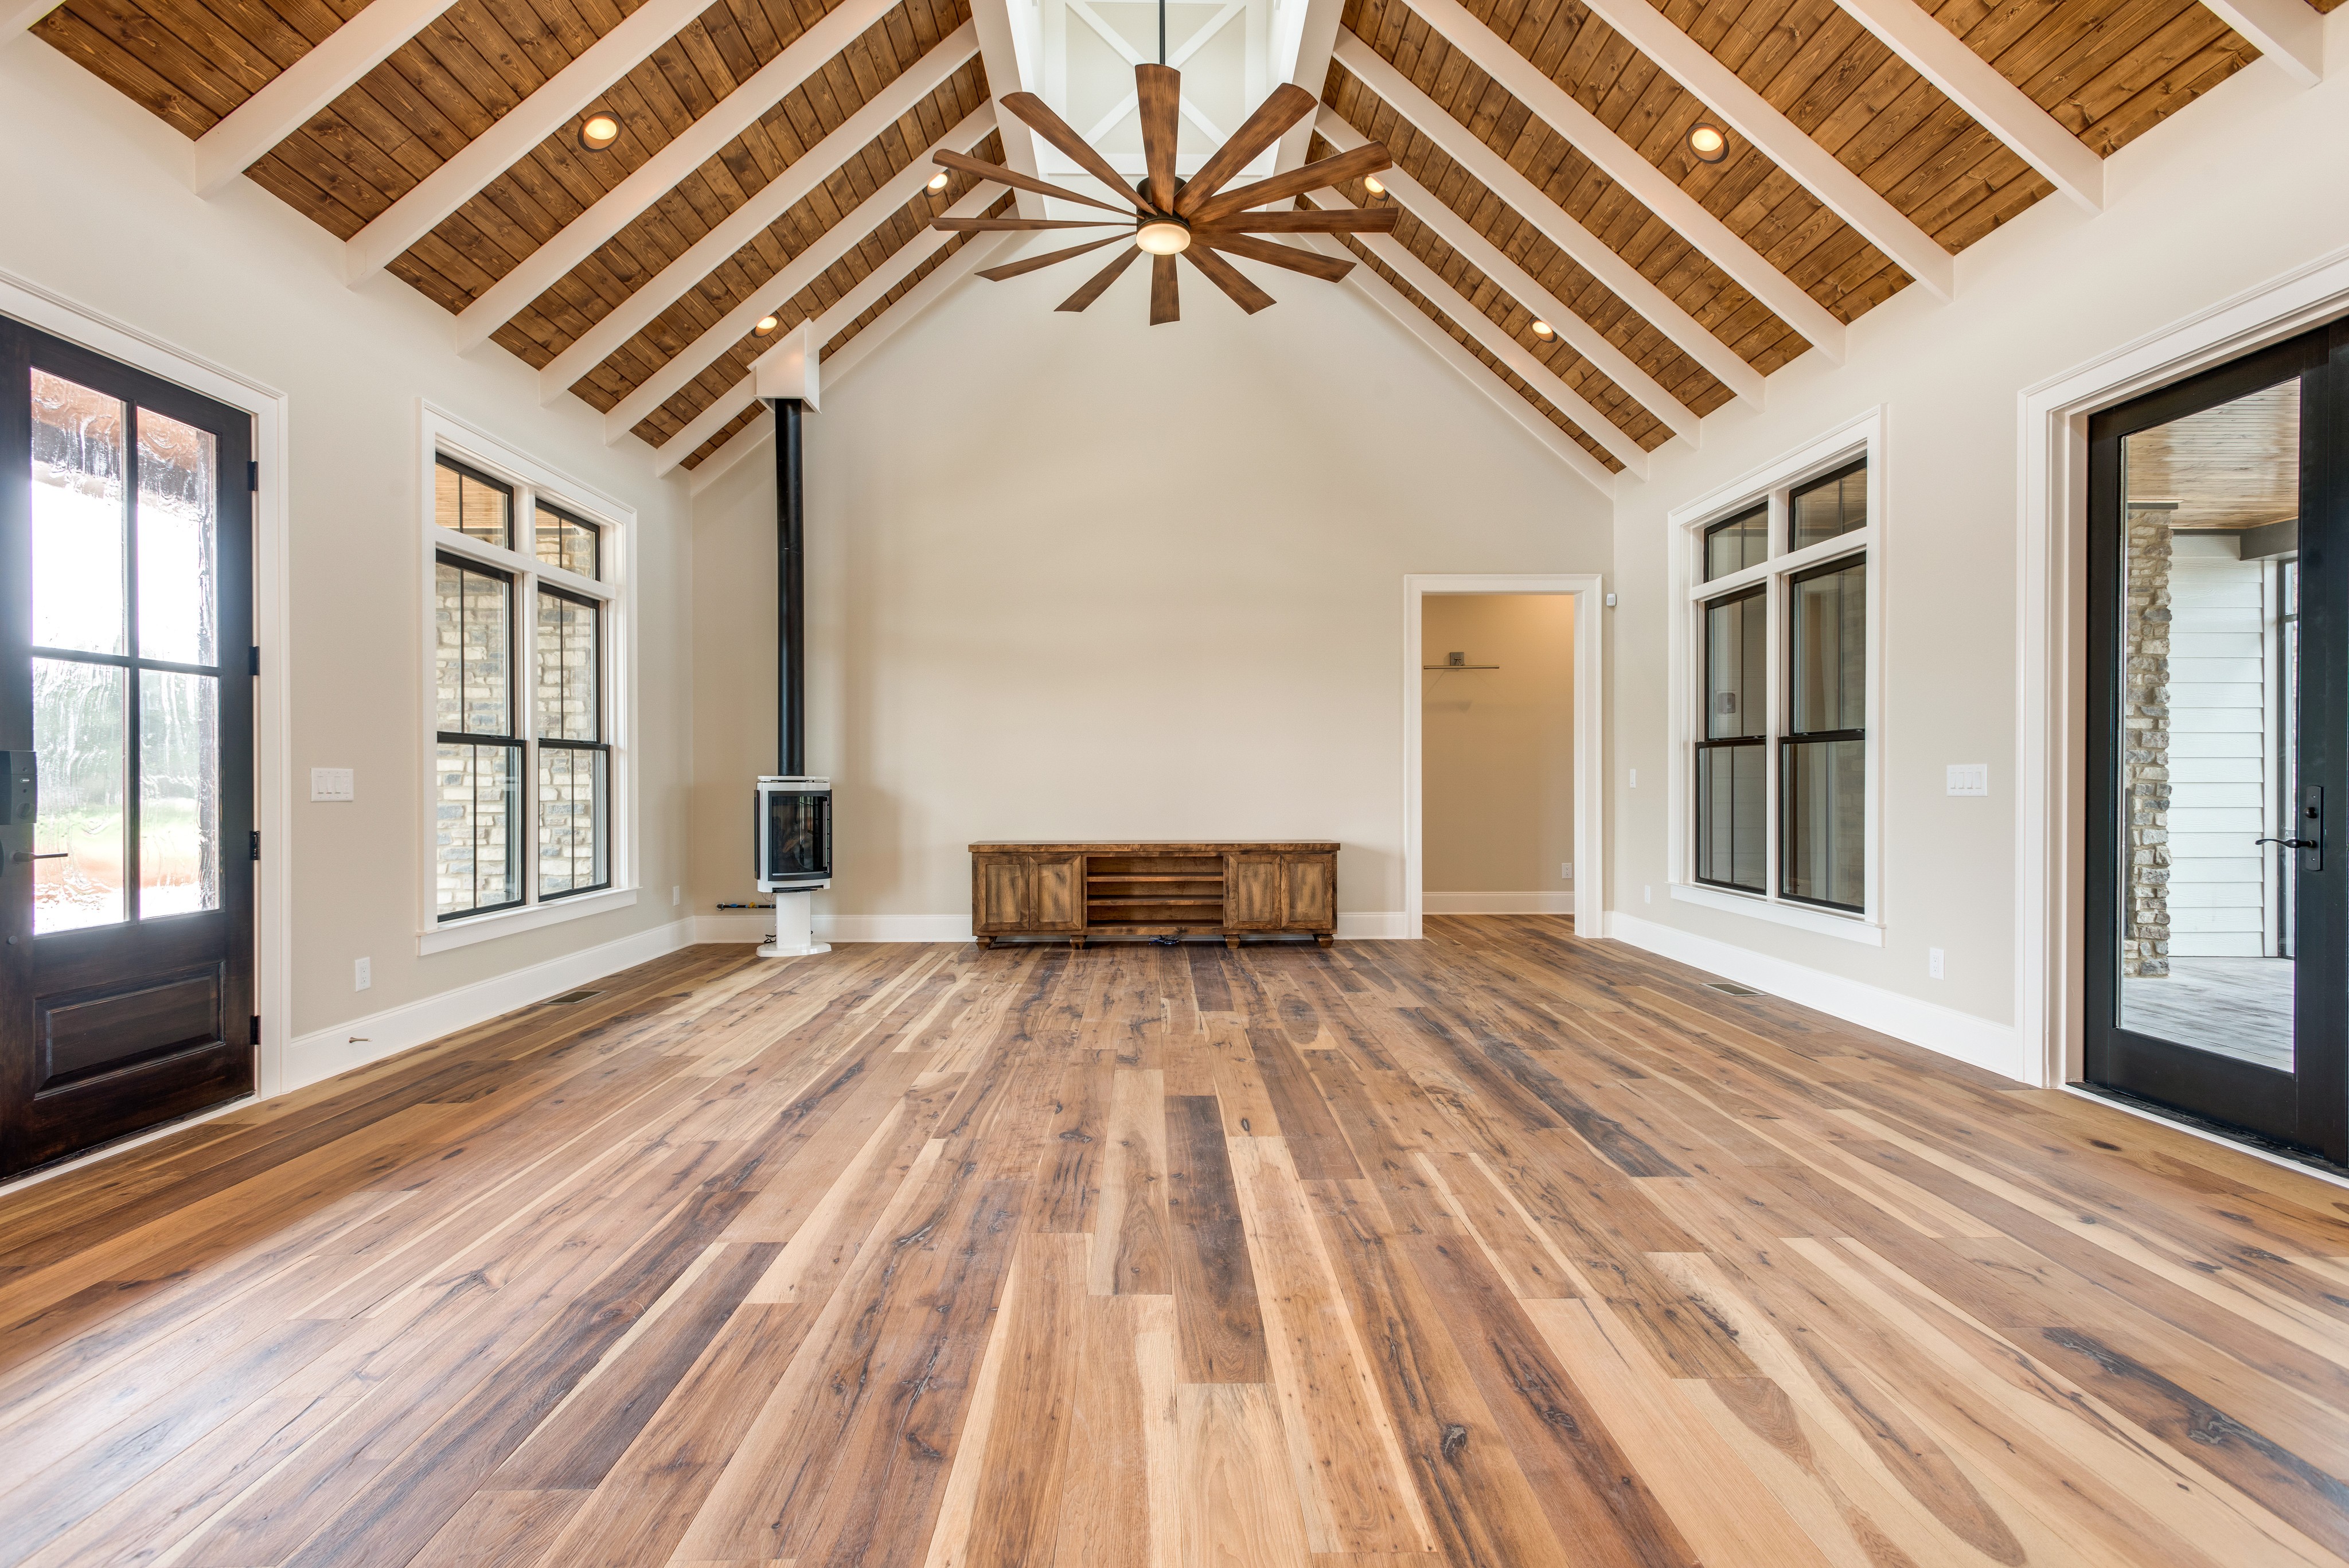 Real Wood Floors Linkedin, Photos Of Hardwood Floors